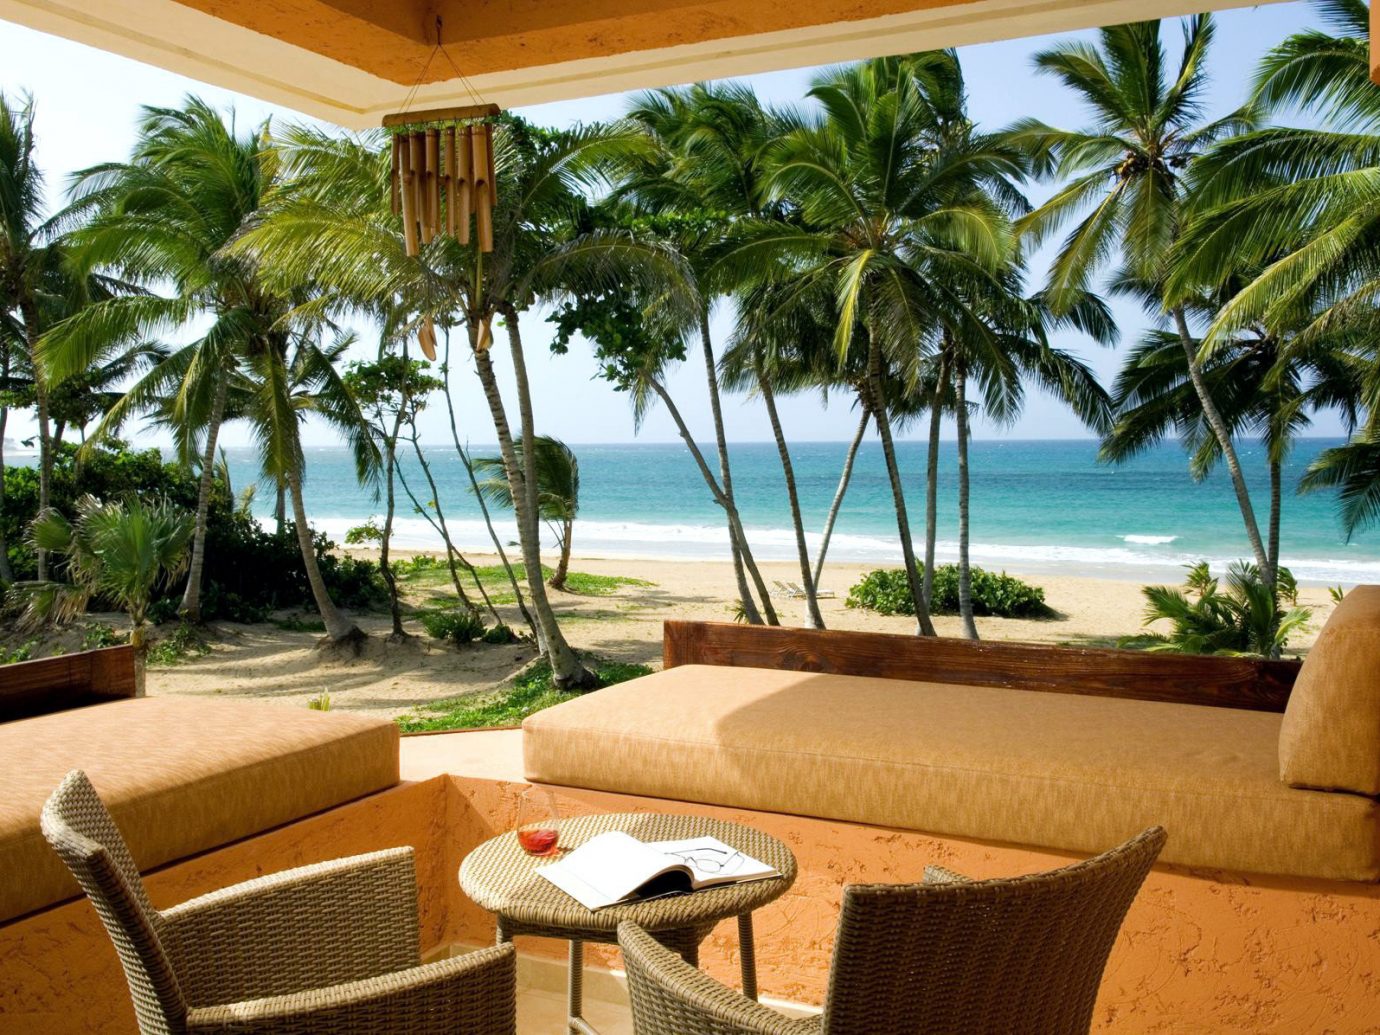 Relaxing nook overlooking the Caribbean